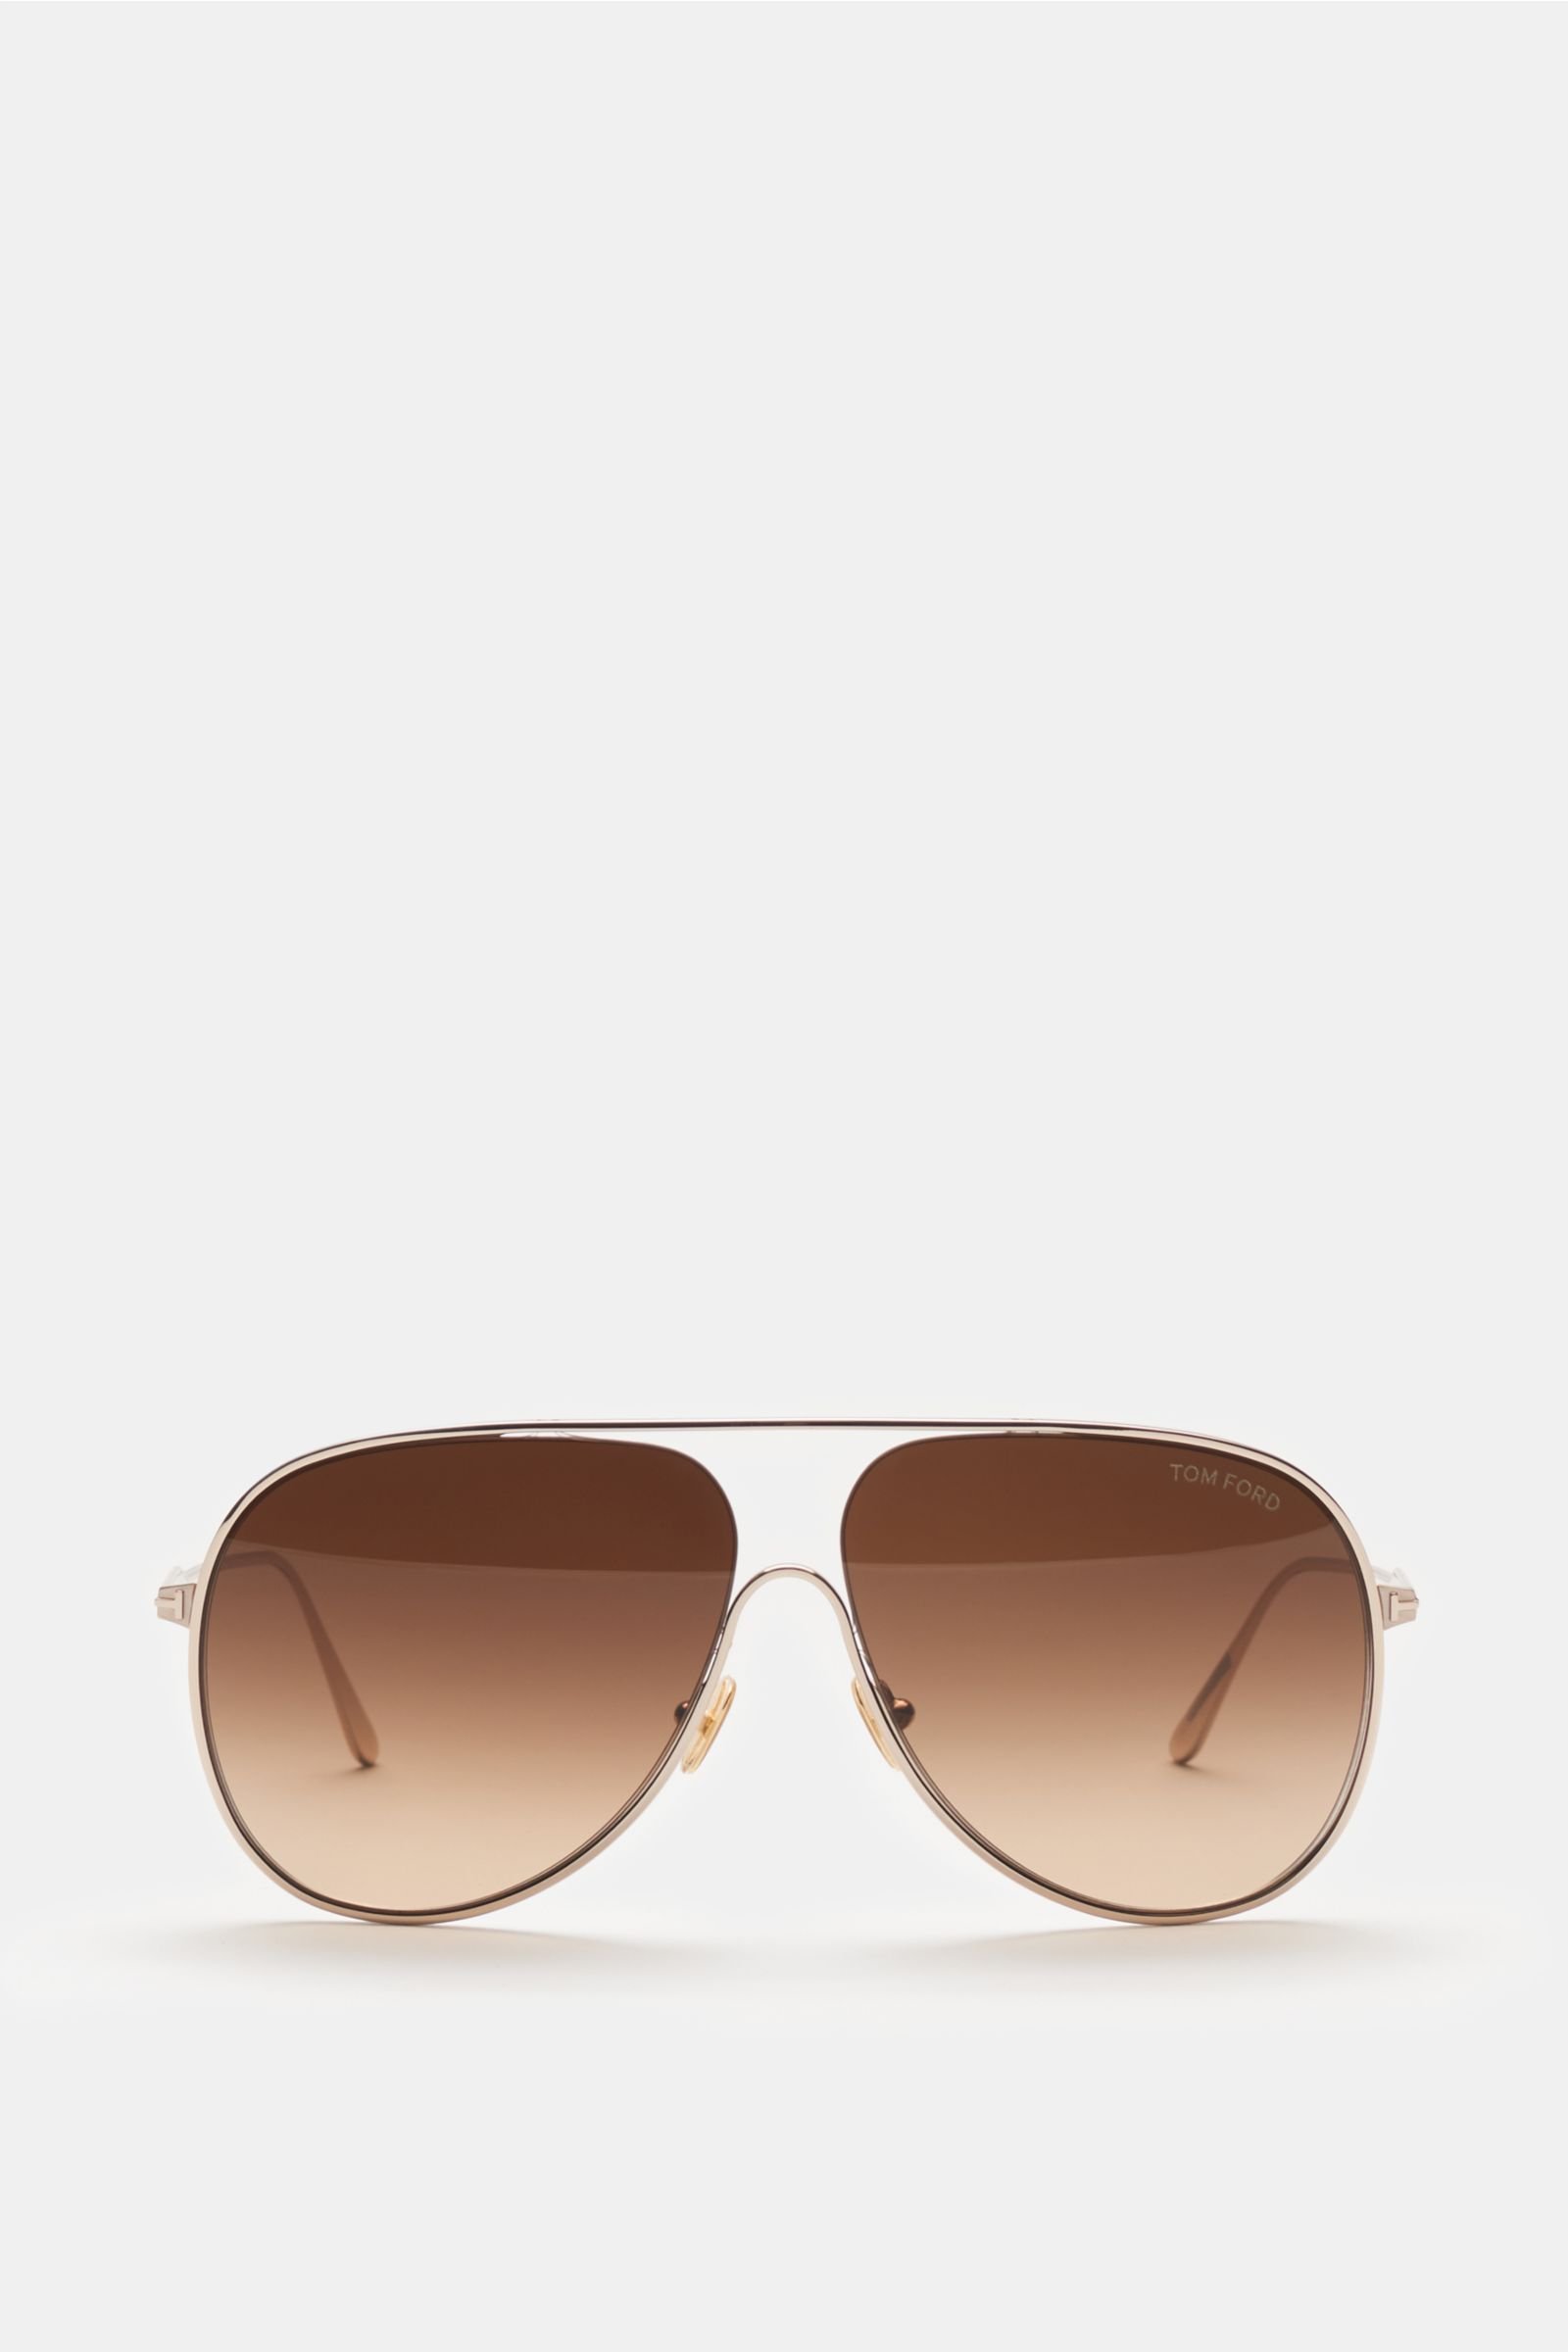 Sunglasses 'Alec' rose gold/brown